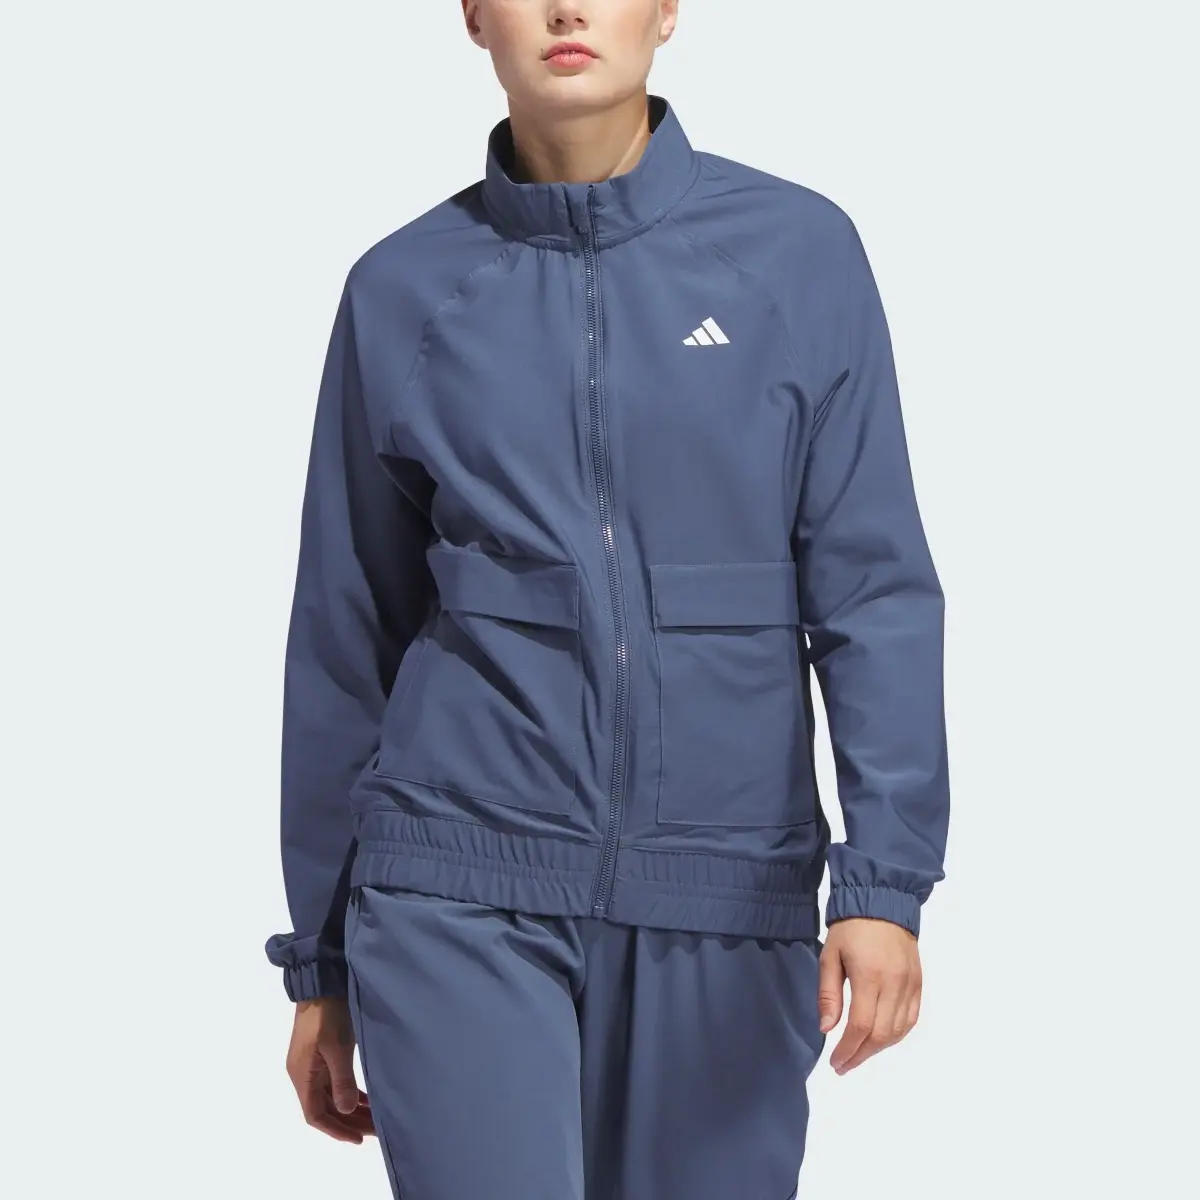 Adidas Women's Ultimate365 Novelty Jacket. 1